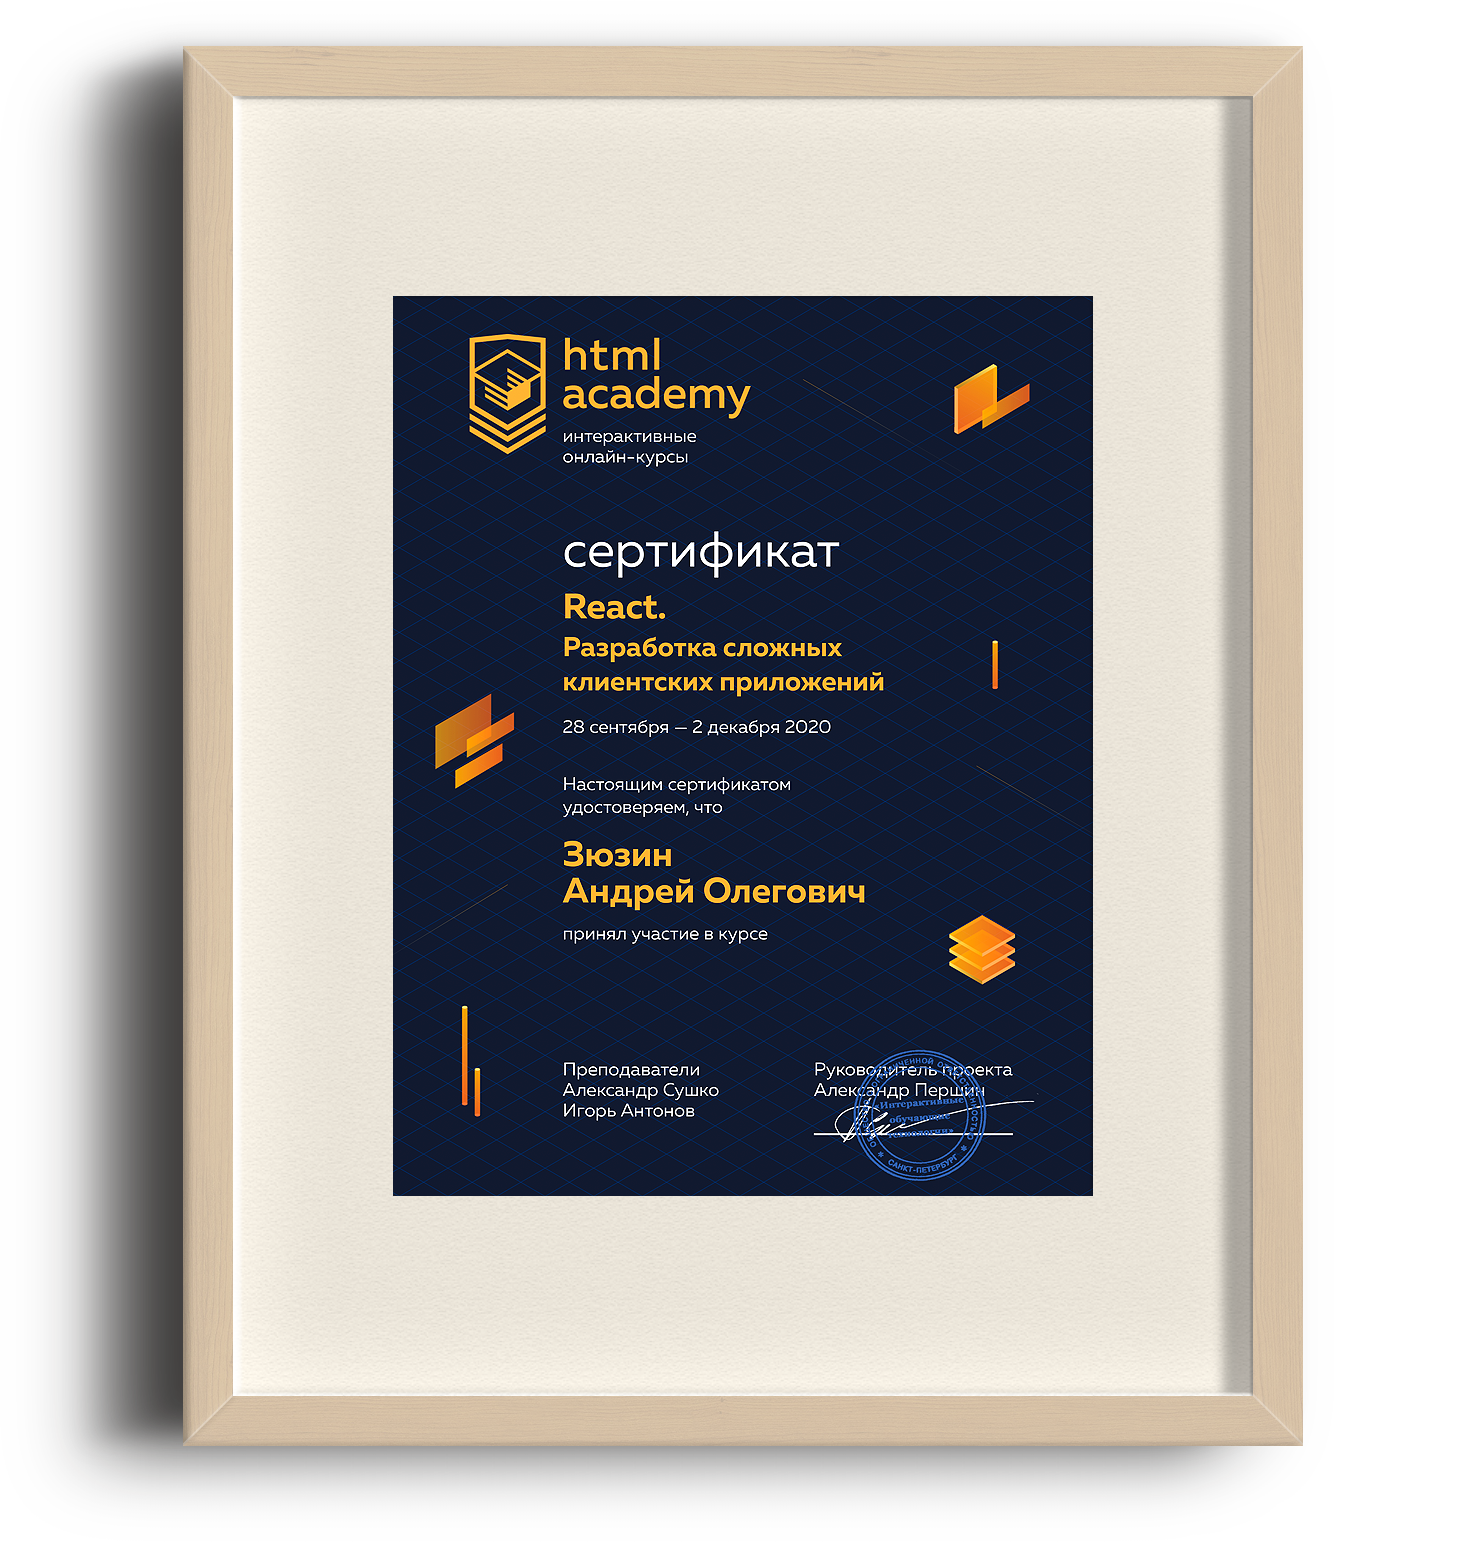 Сертификат — React. Разработка сложных клиентских приложений - htmlacademy